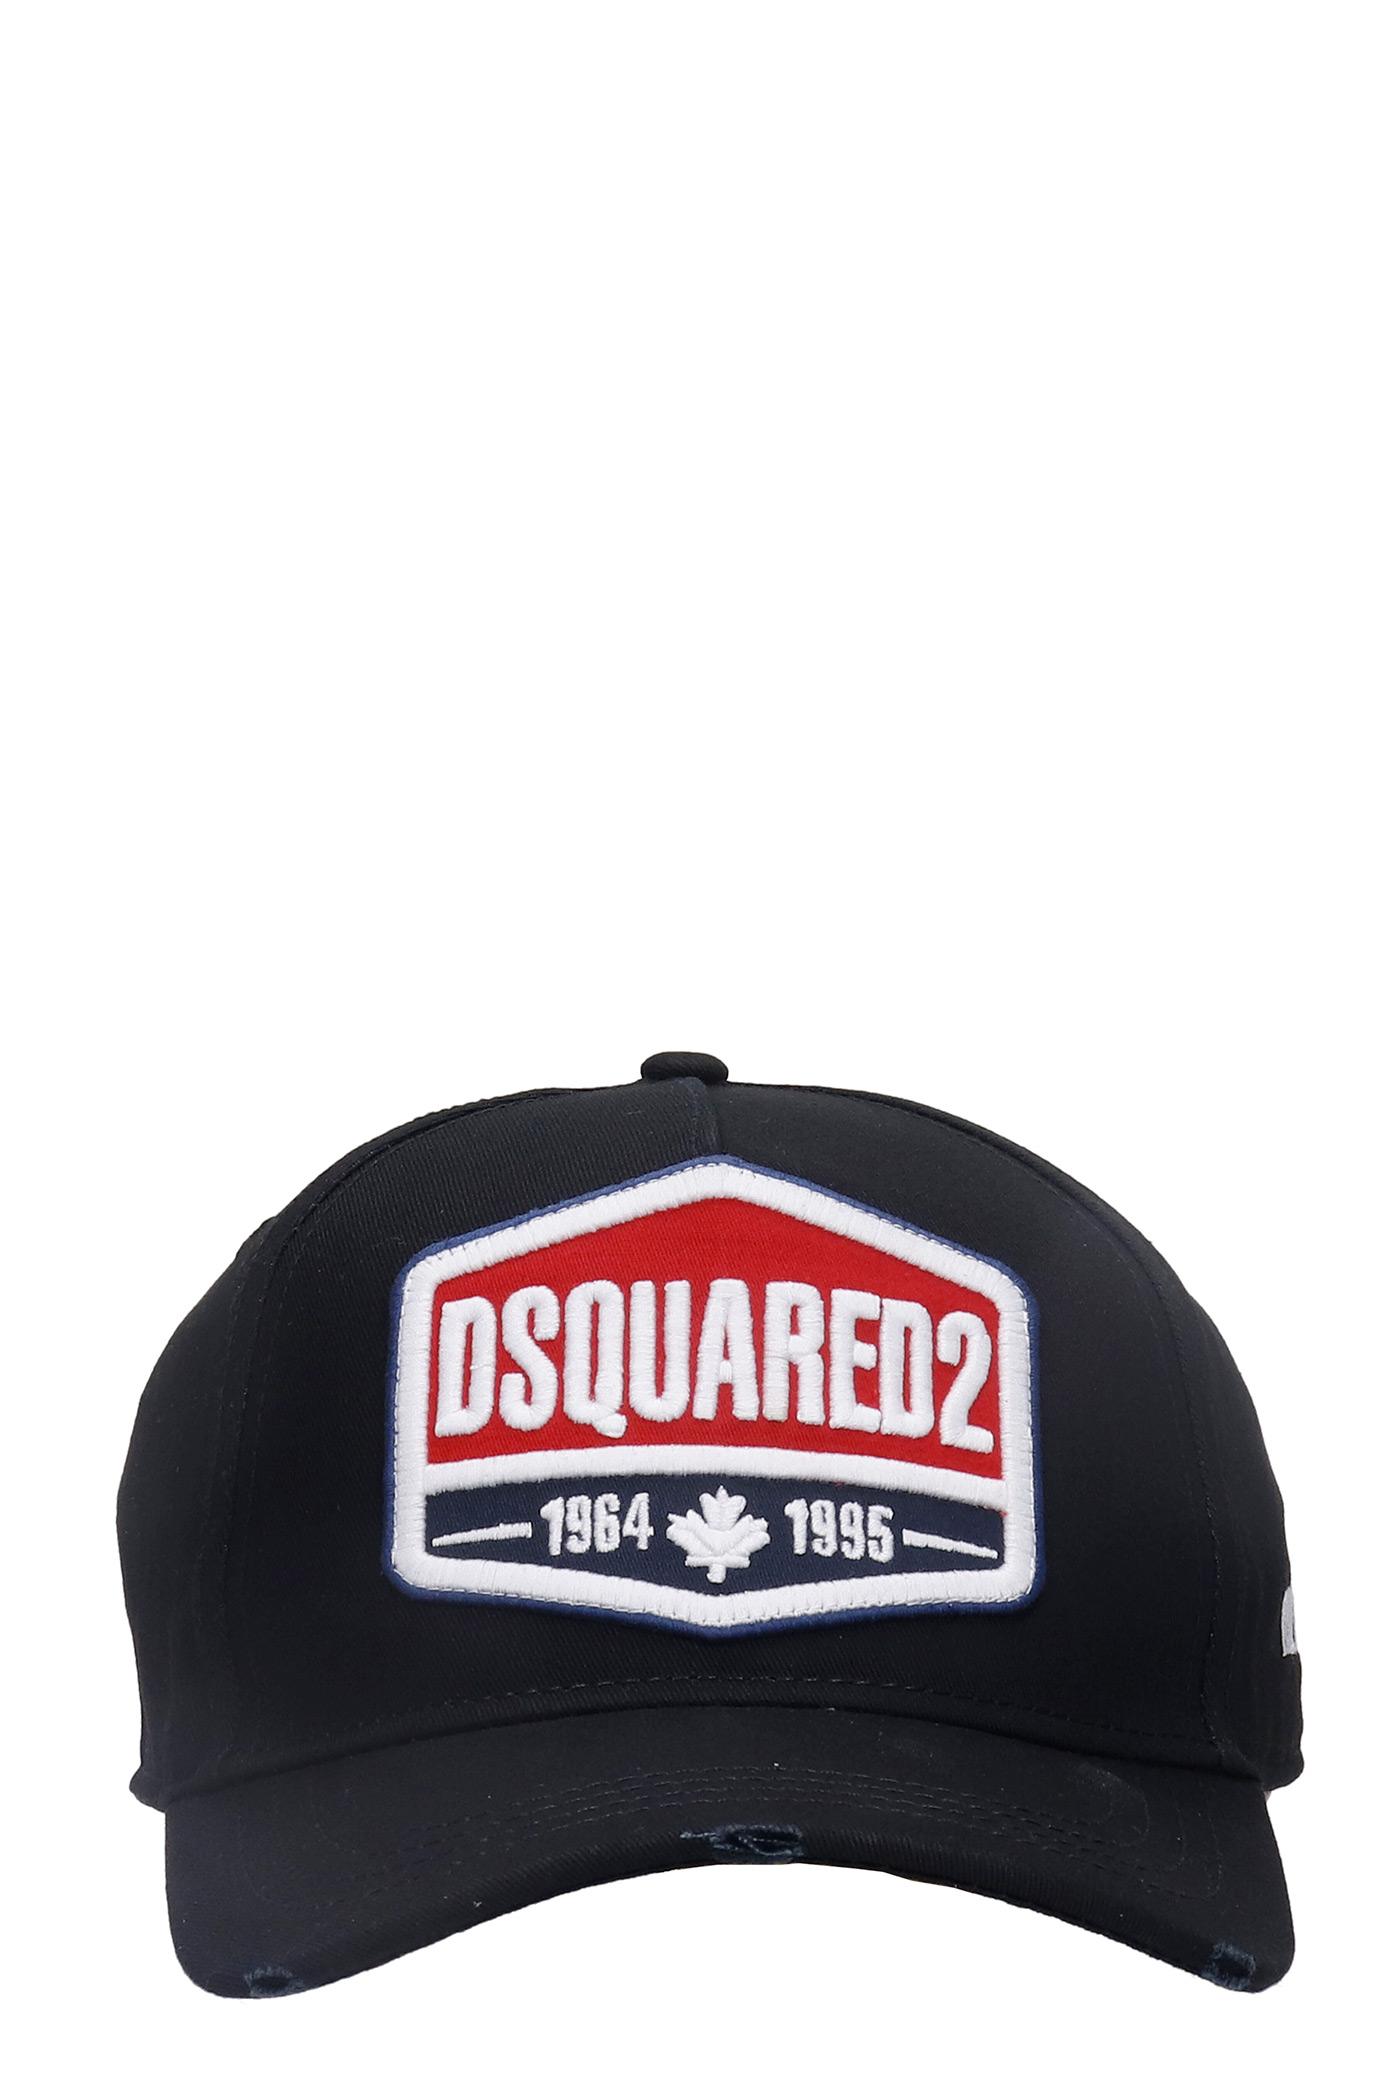 black dsquared hat Off 79% - www.gmcanantnag.net